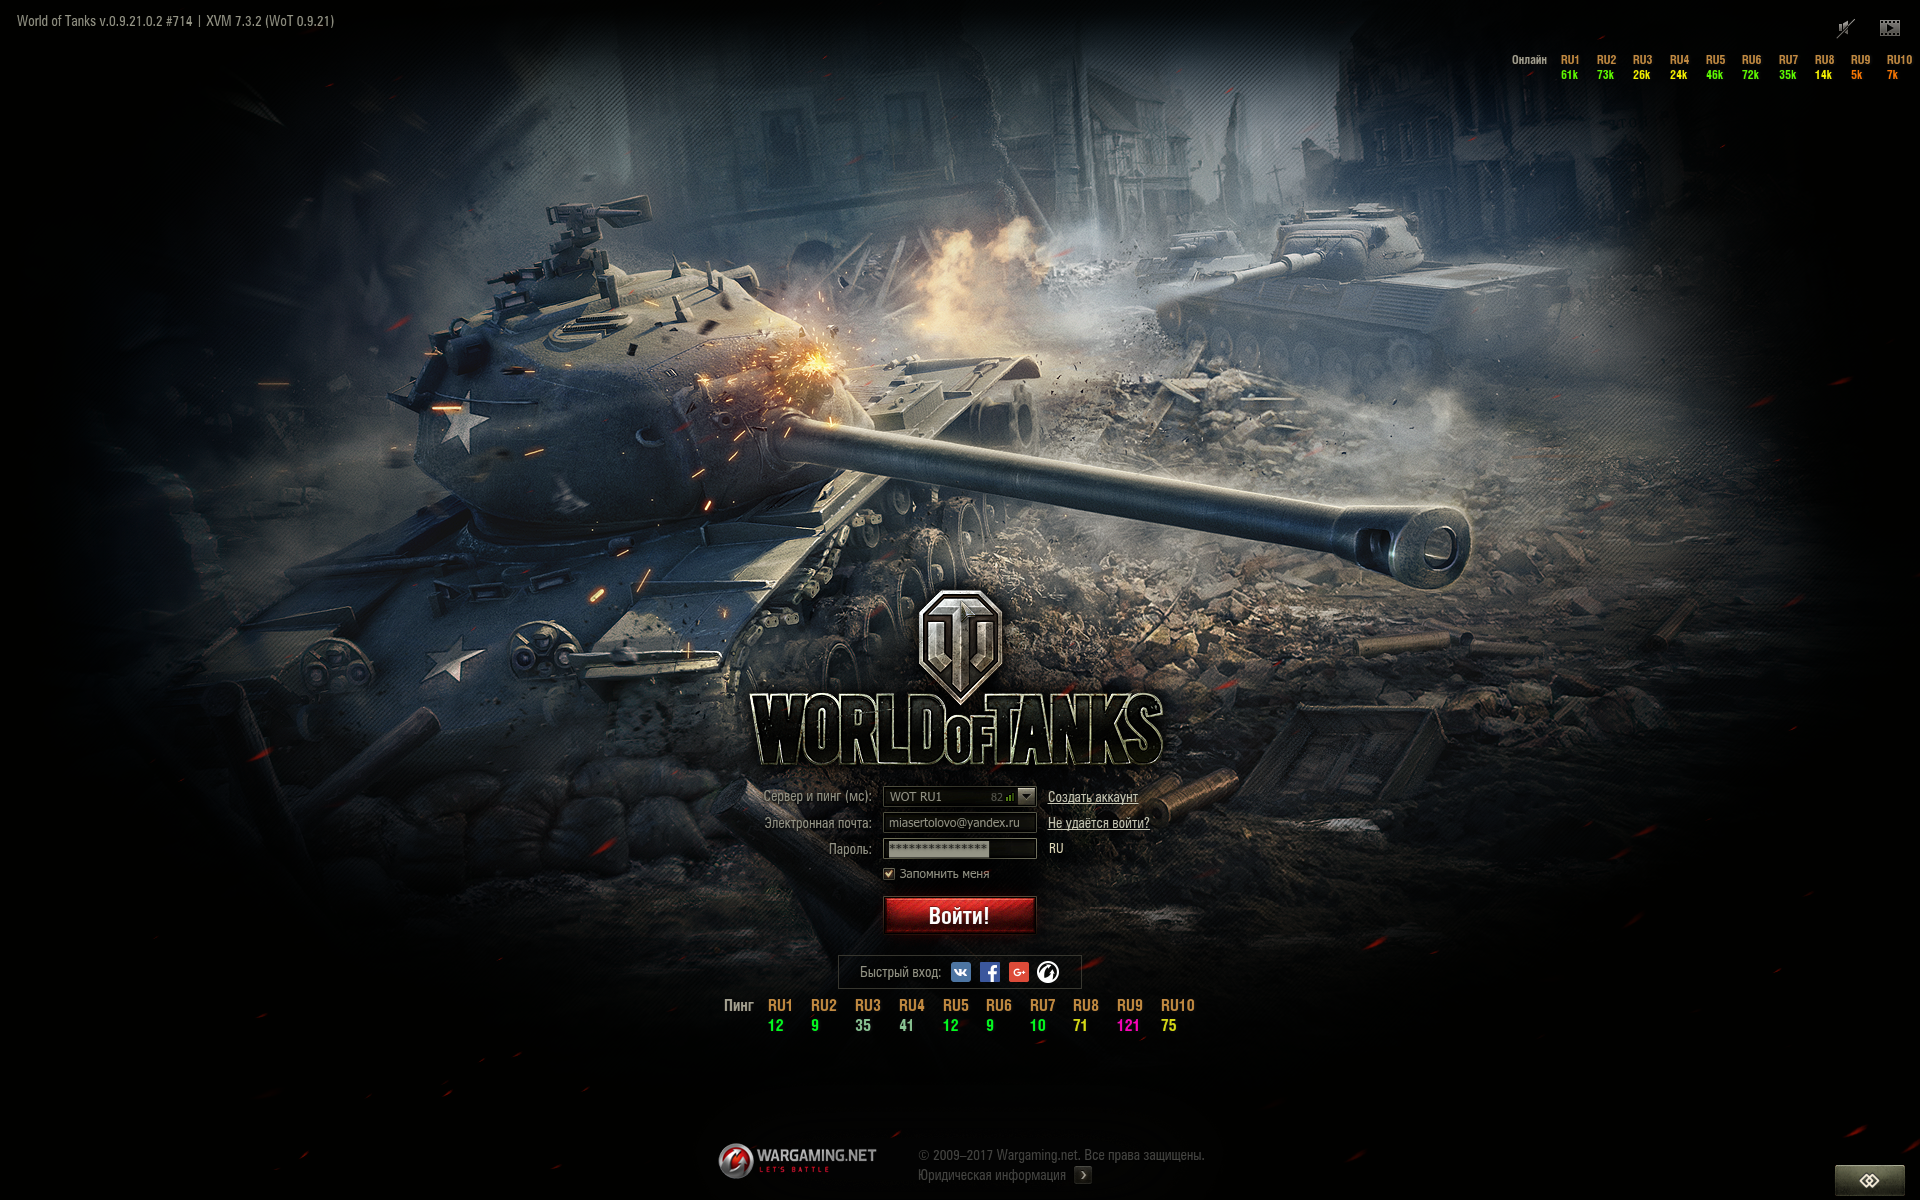 Как зайти в world of tanks